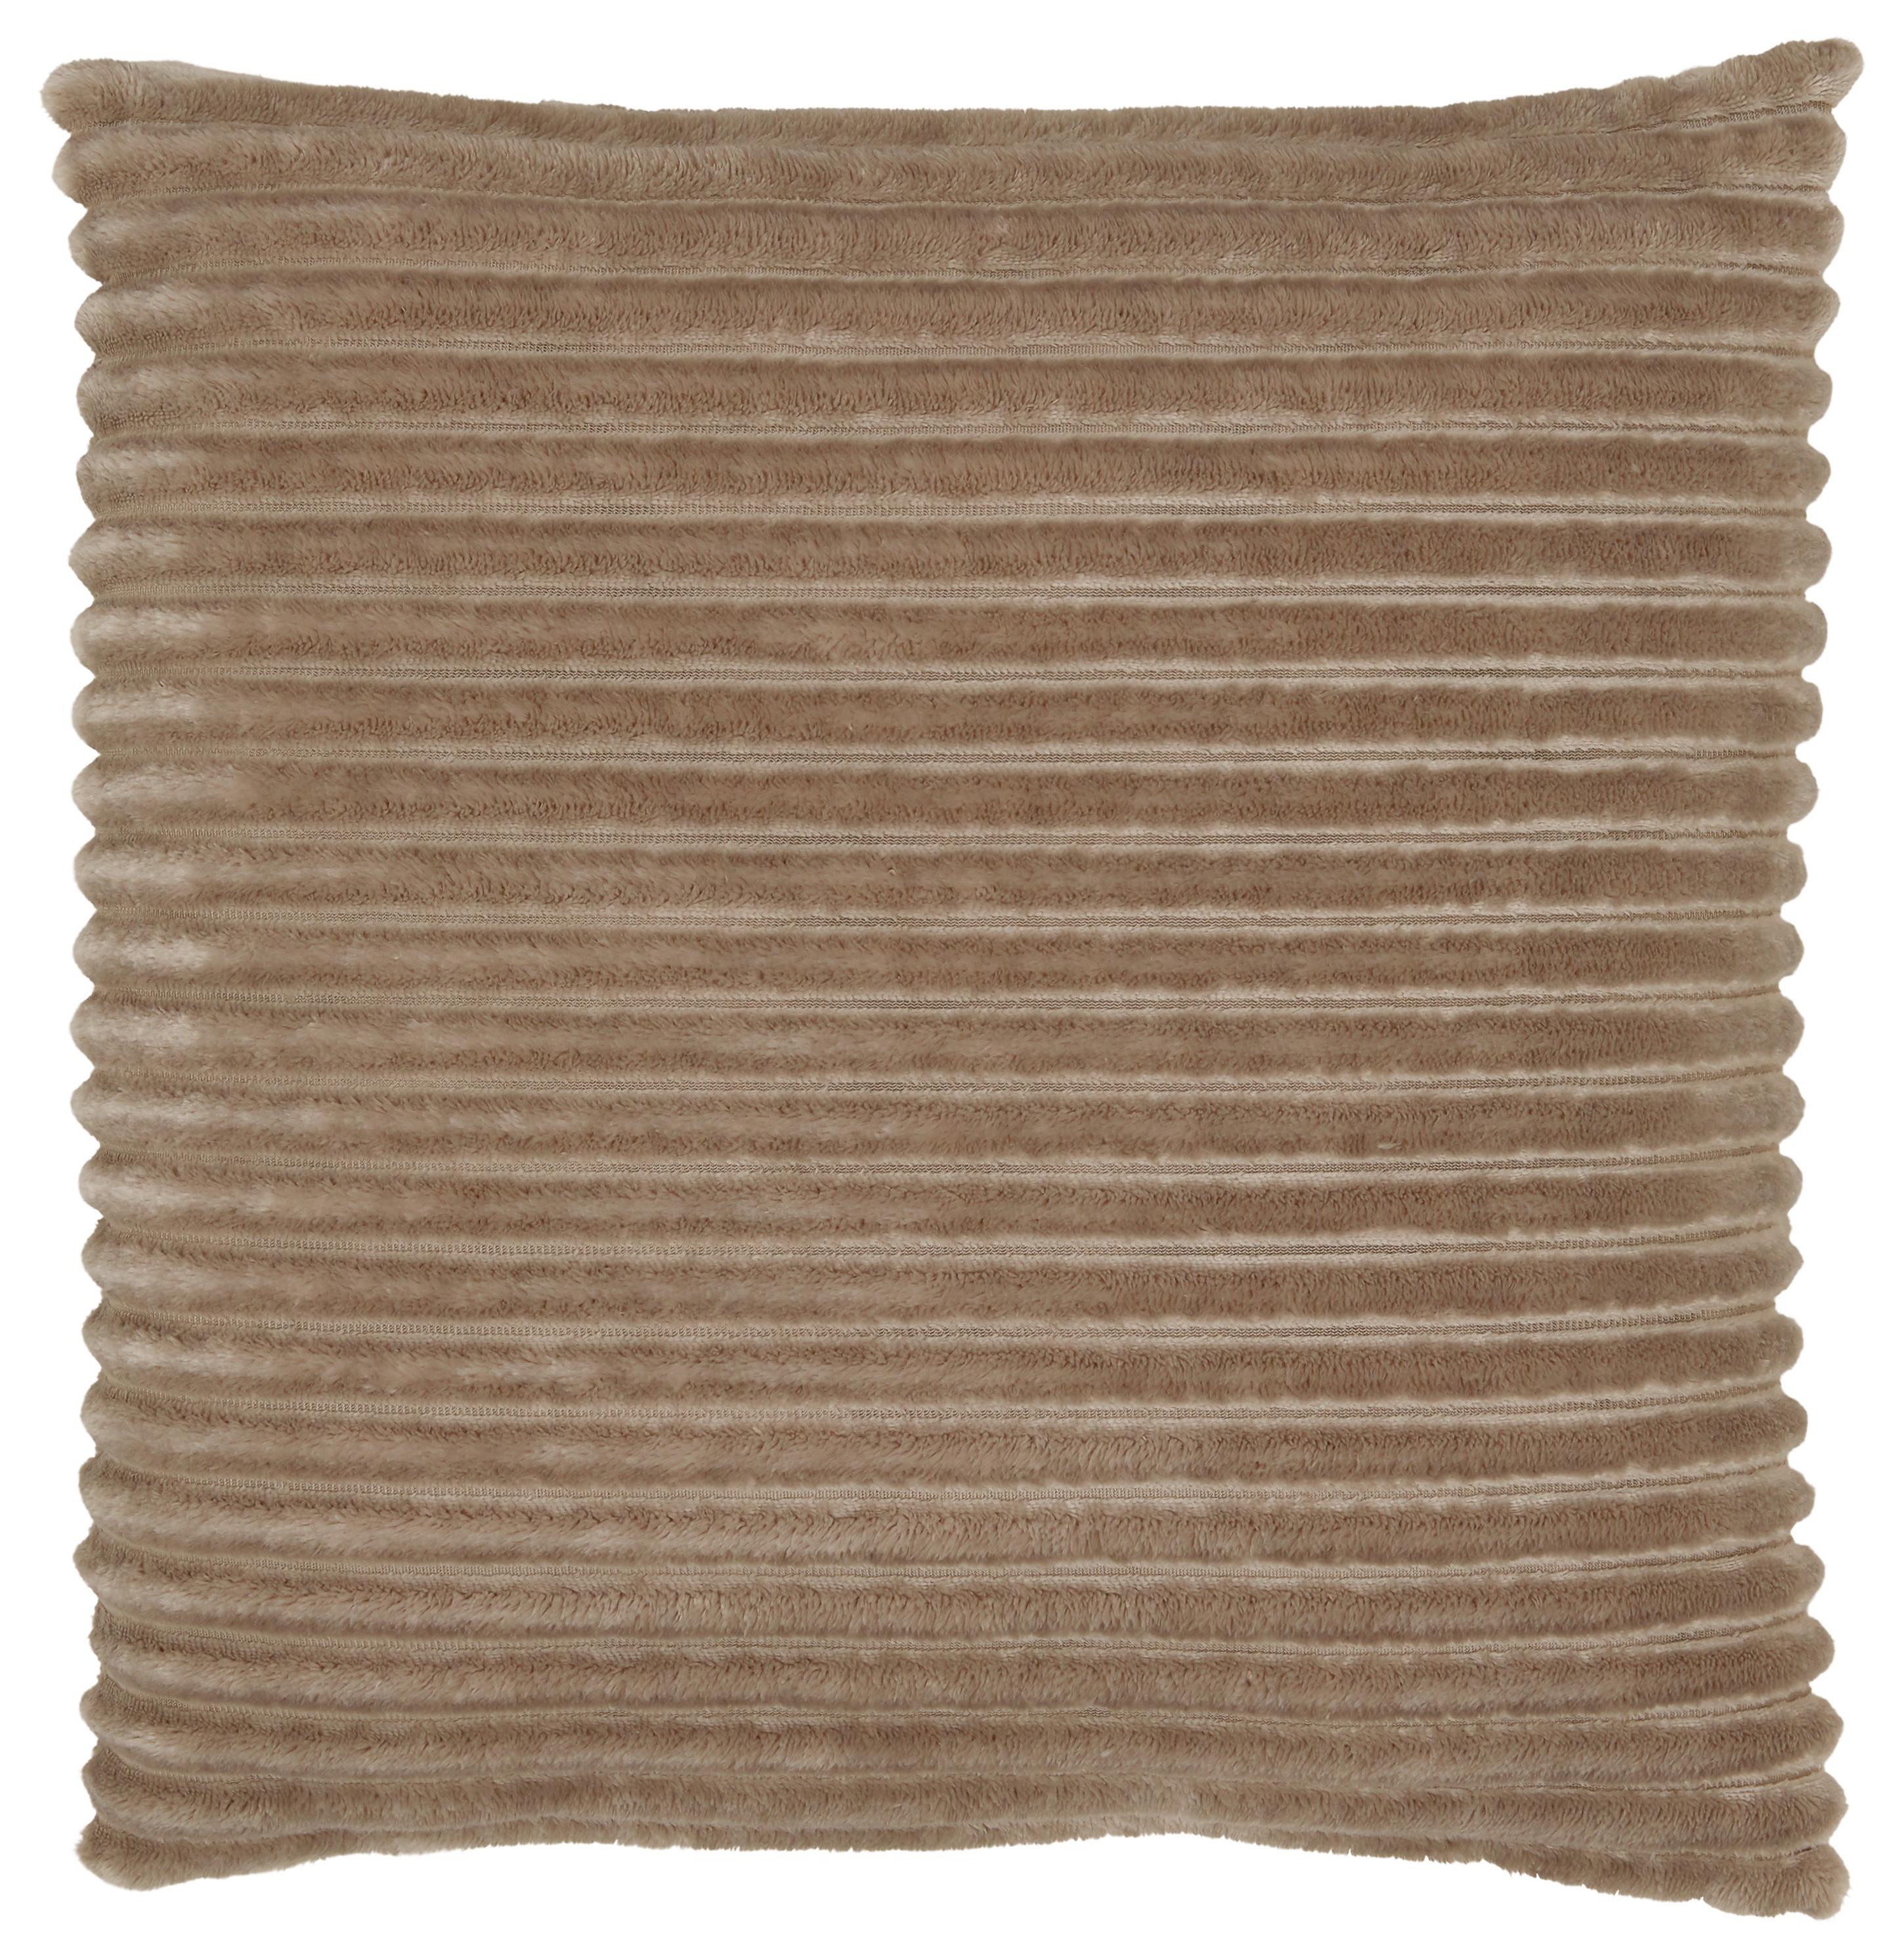 Zierkissen Cordi aus Flanell ca. 45x45cm - Beige, KONVENTIONELL, Textil (45/45cm) - Modern Living